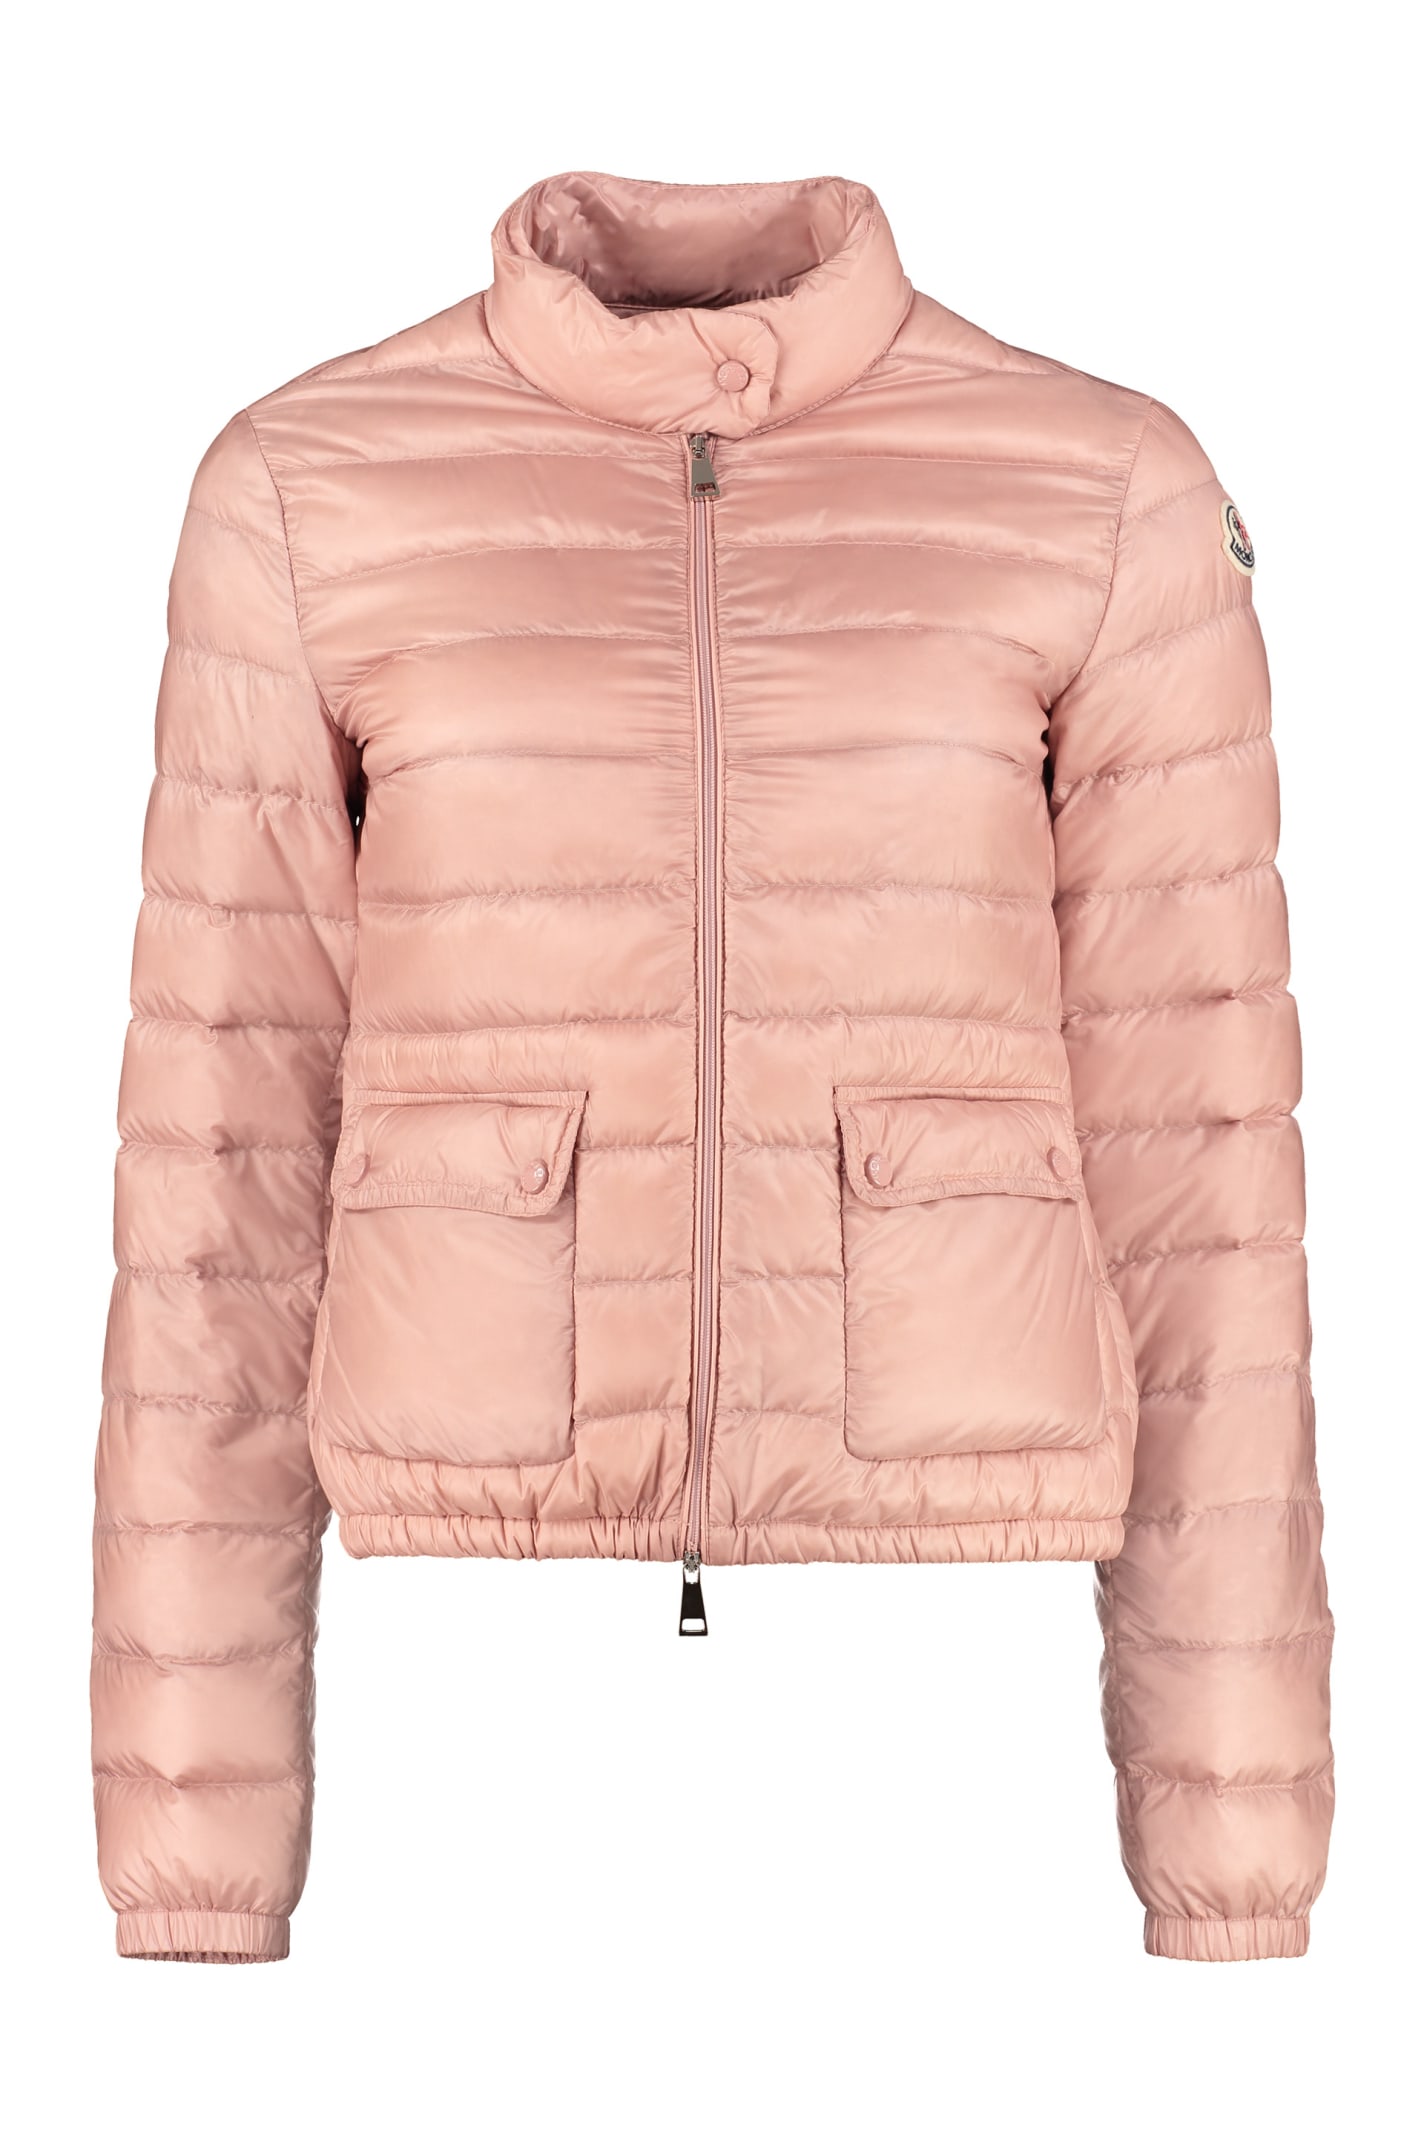 Moncler Lans Full Zip Padded Jacket In Pink